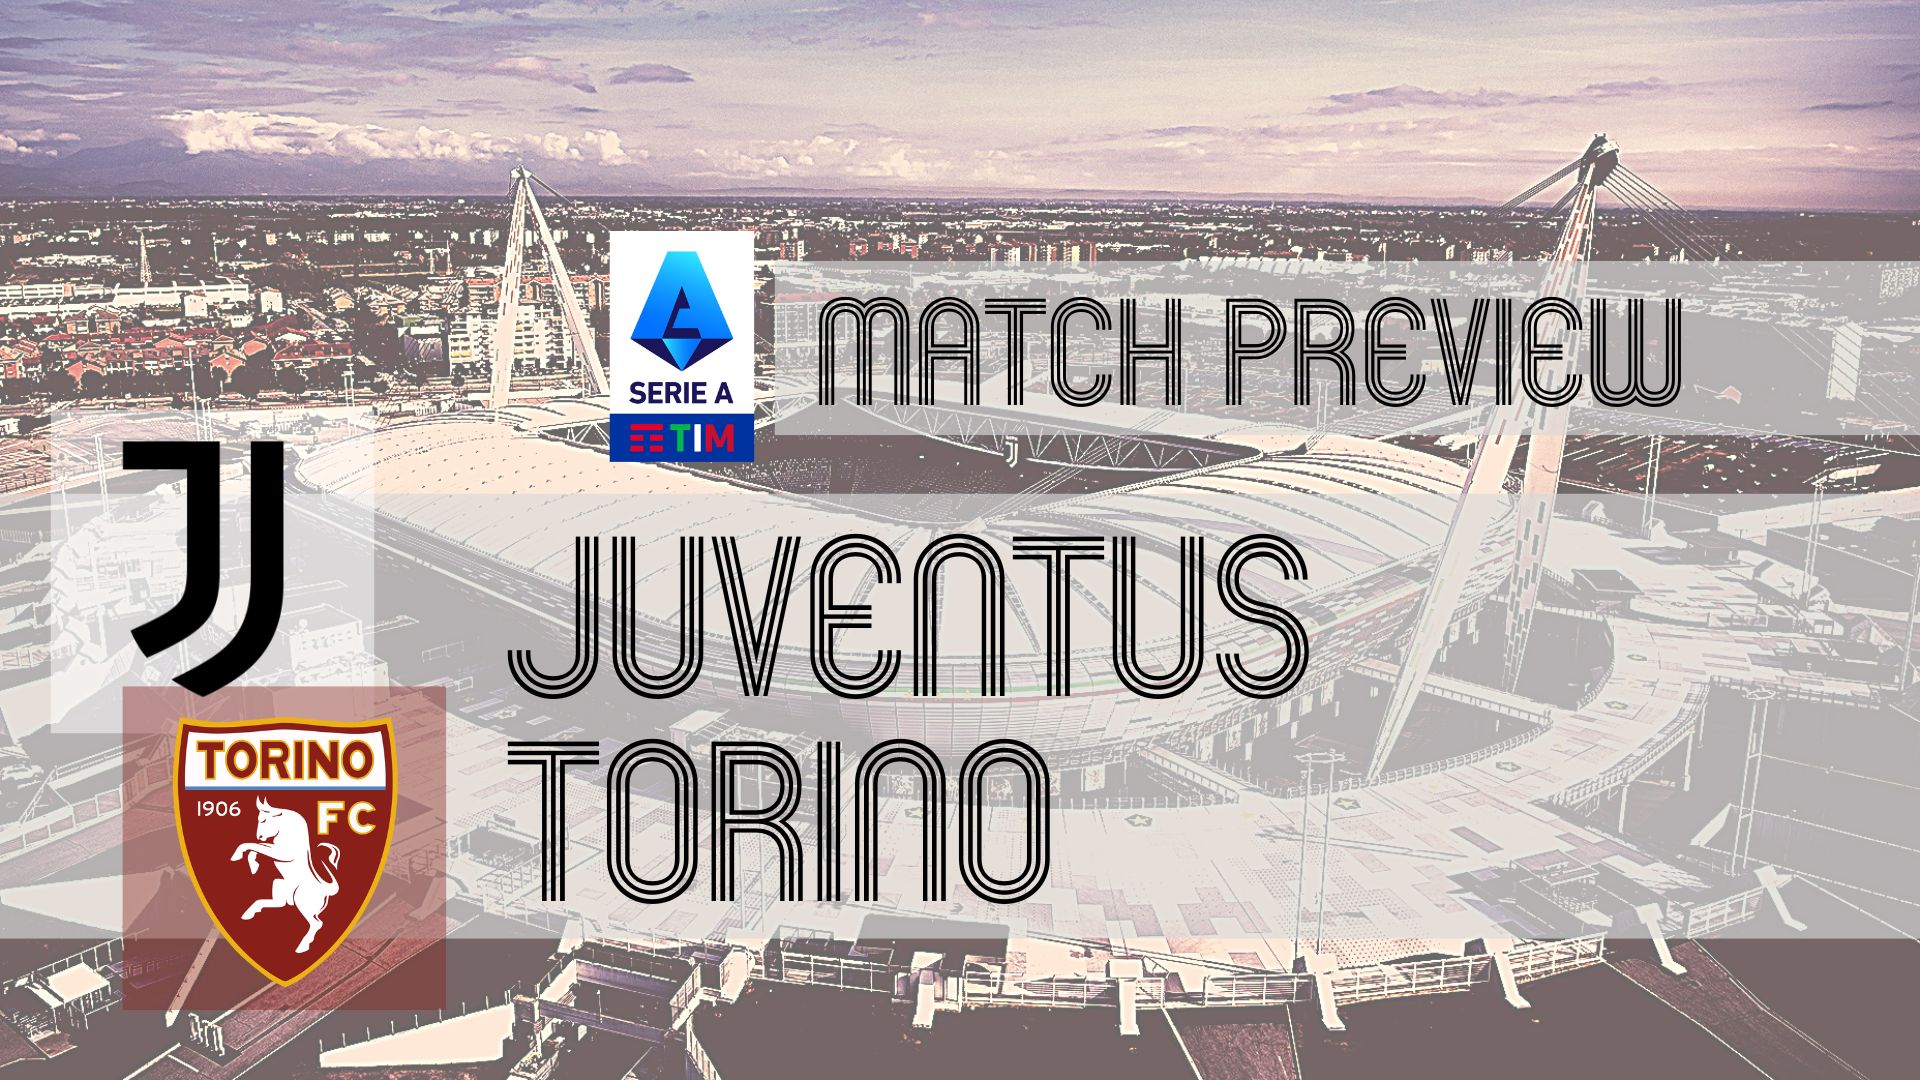 Juventus vs Torino: Match Preview - Juventus